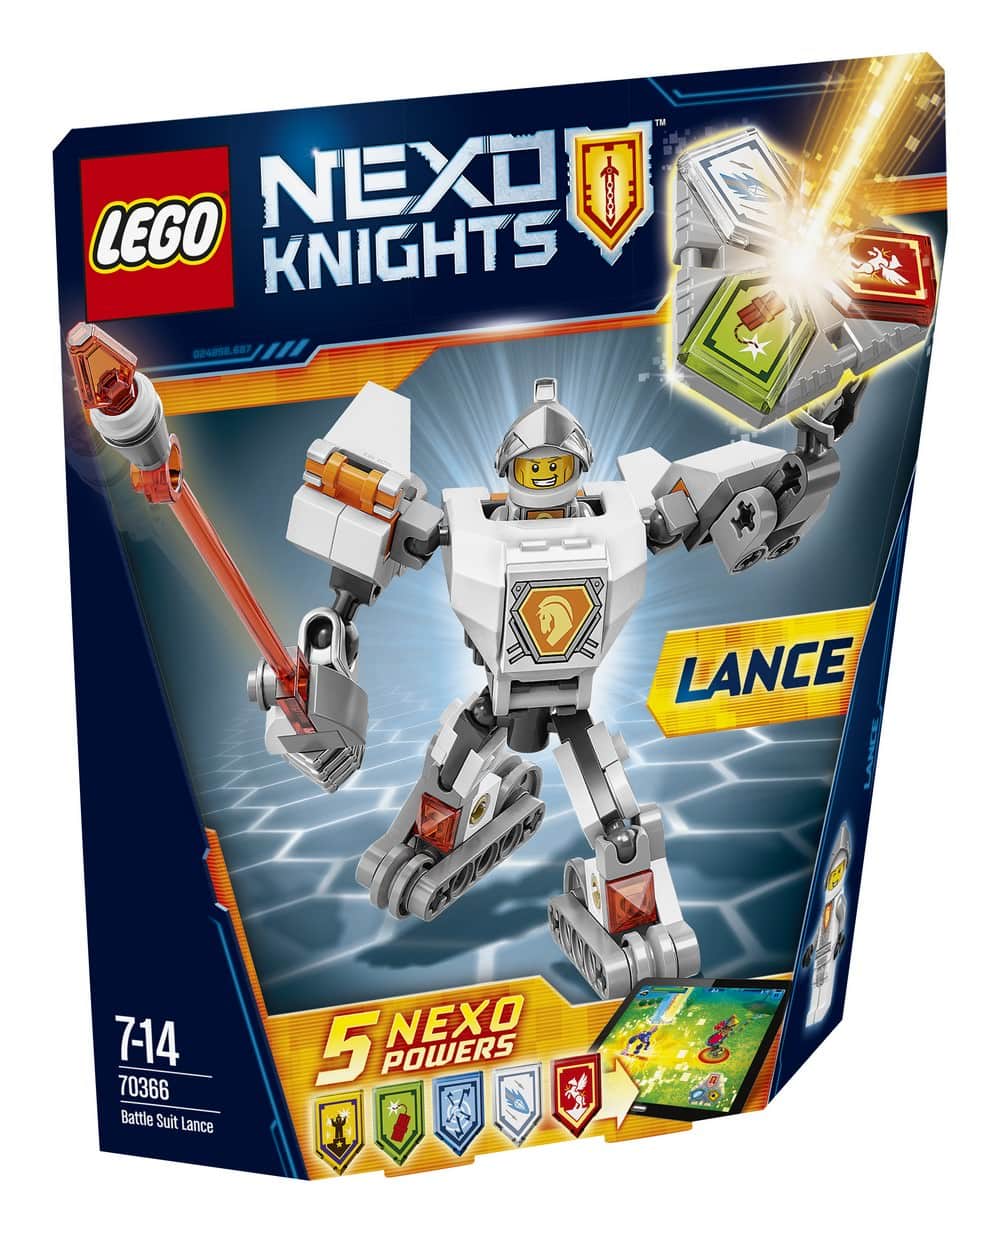 nexo knights